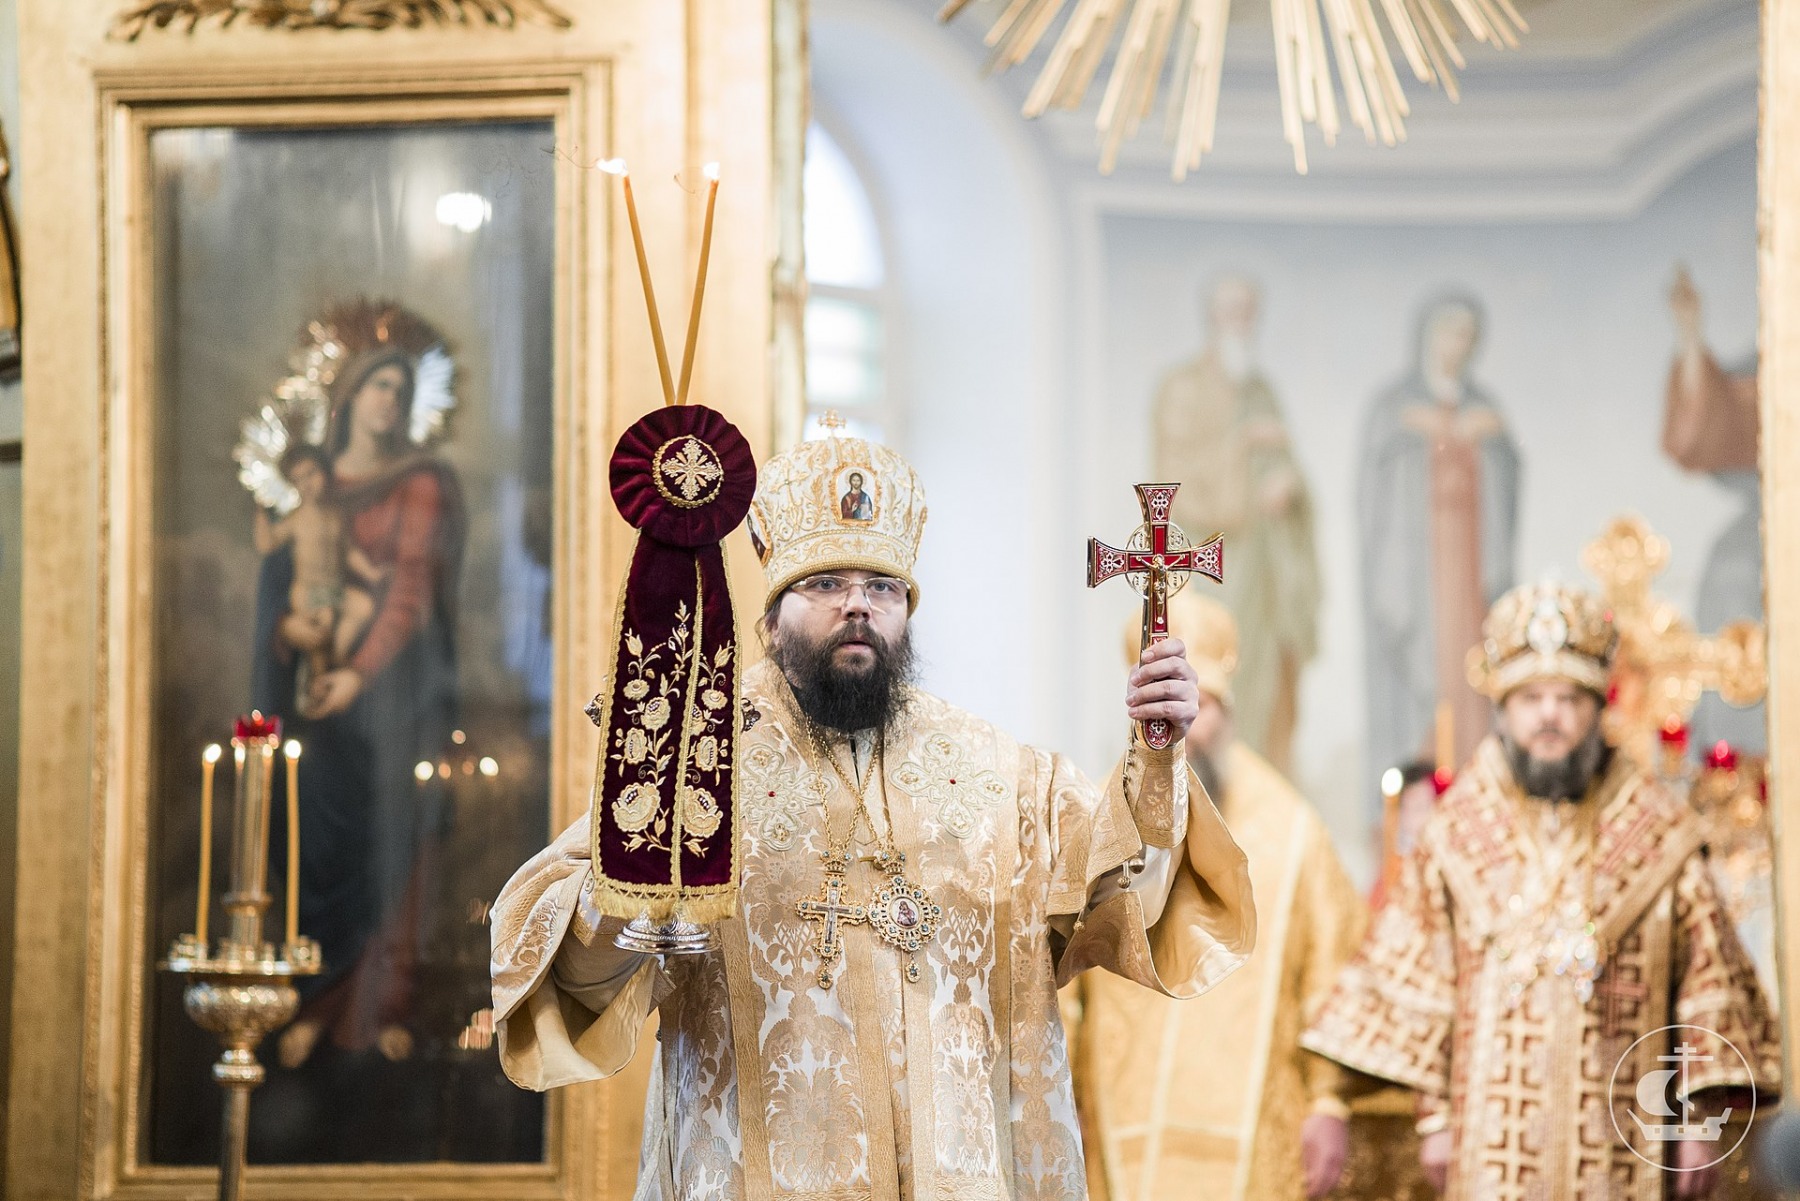 Архиепископ Матфей назначен игуменом Псково-Печерского монастыря, он будет отвечать за ремонт и реставрацию